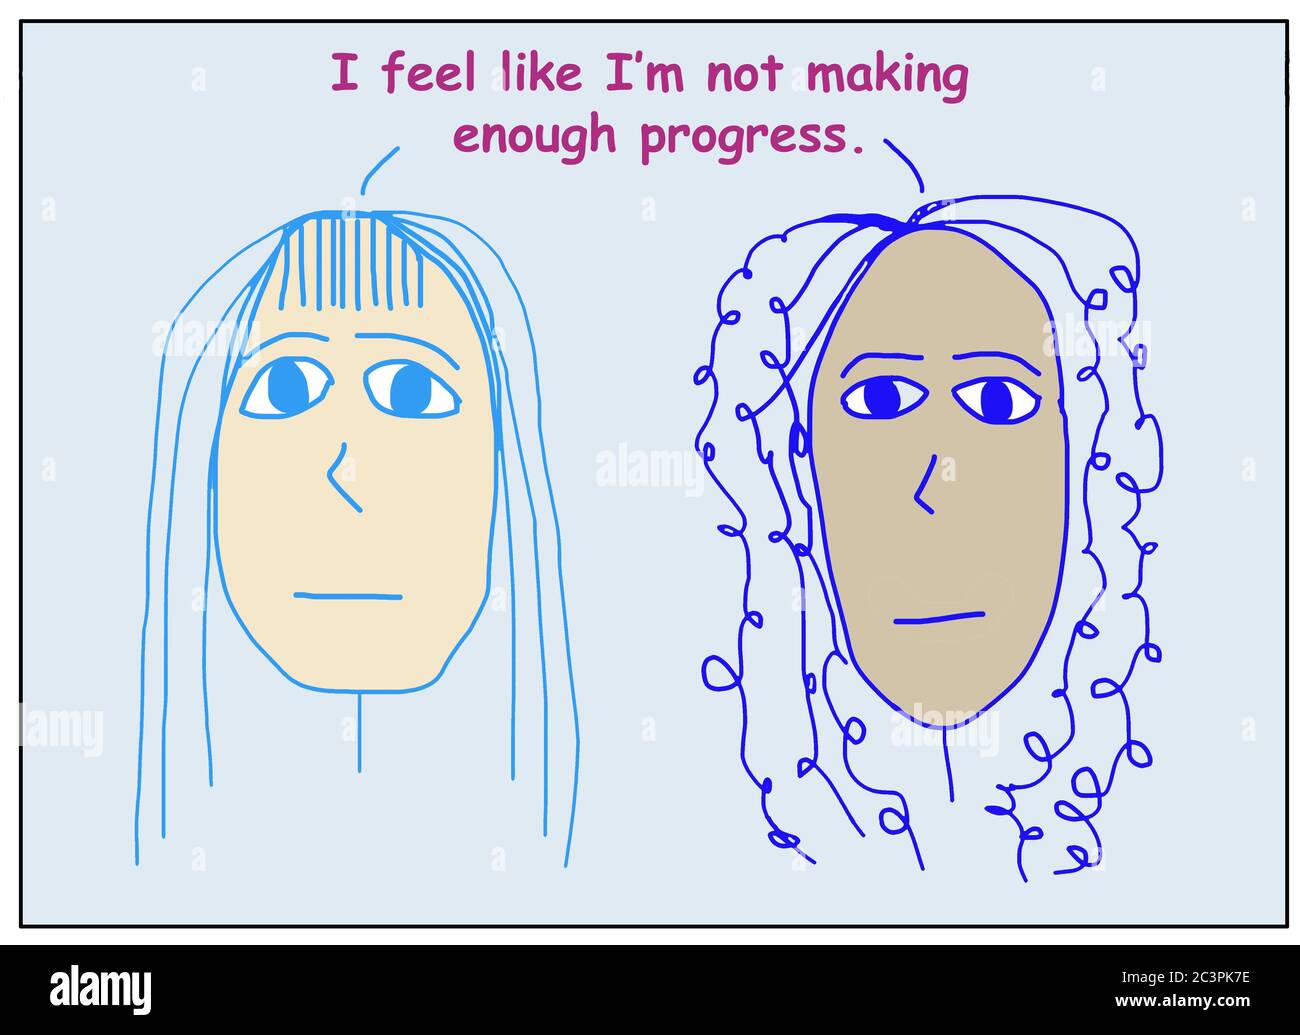 Farbige Karikatur von zwei betroffenen, ethnisch verschiedenen Frauen srtating Ich fühle mich, als ob ich nicht genug Fortschritte machen. Stockfoto